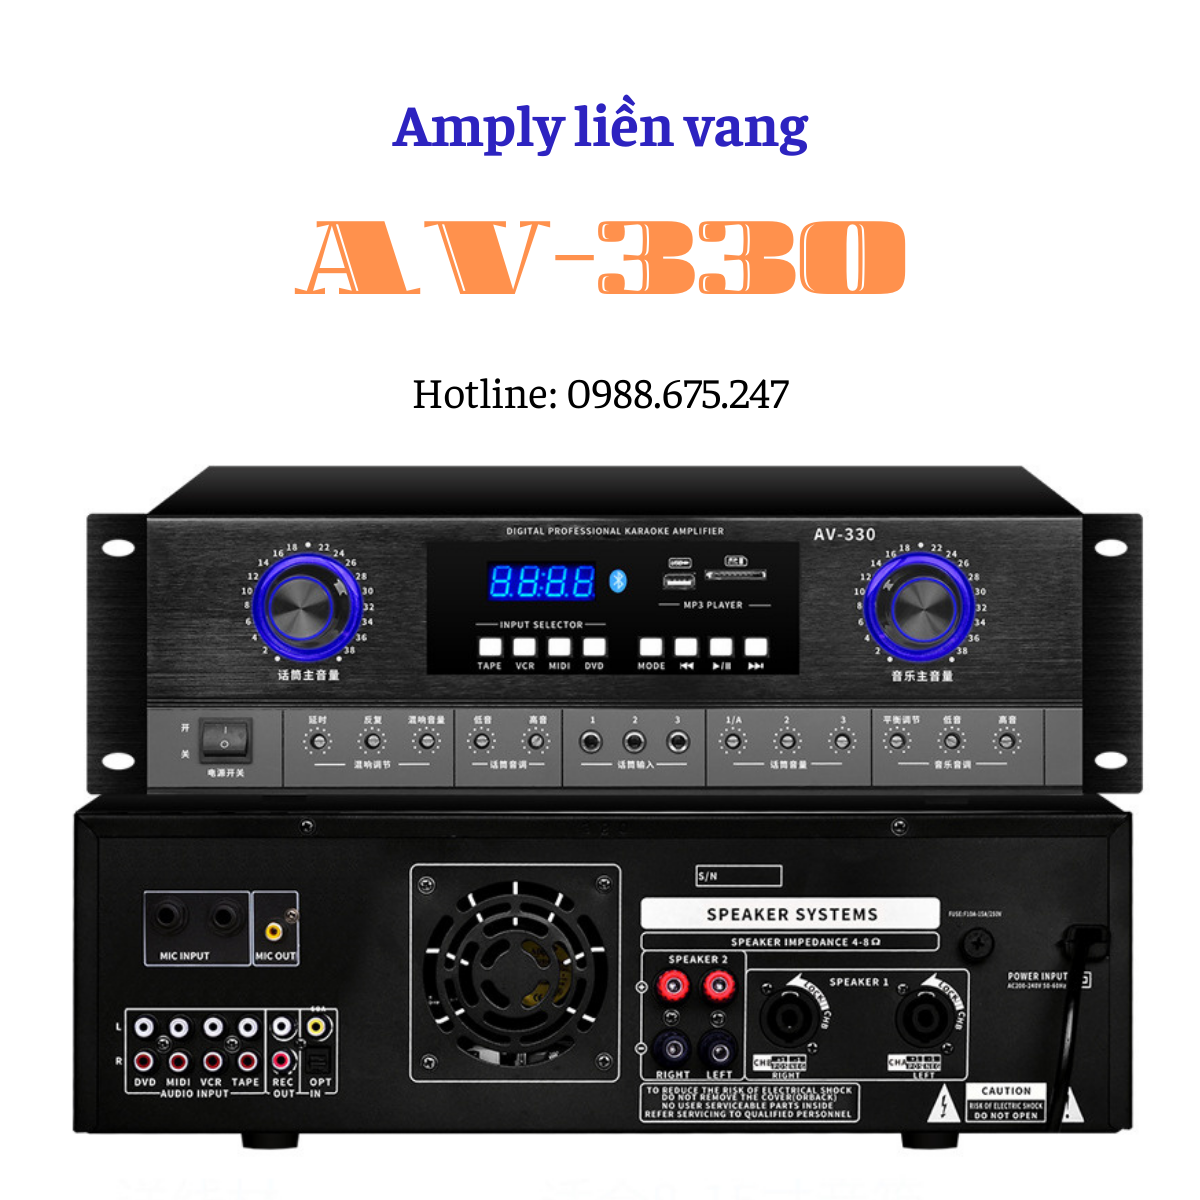 Amply liền vang Gunssi AV-330 công suất lớn. Bộ đẩy liền vang kết nối bluetooth hỗ trợ nhiều giao diện đầu vào. Bảo hành chính hãng.